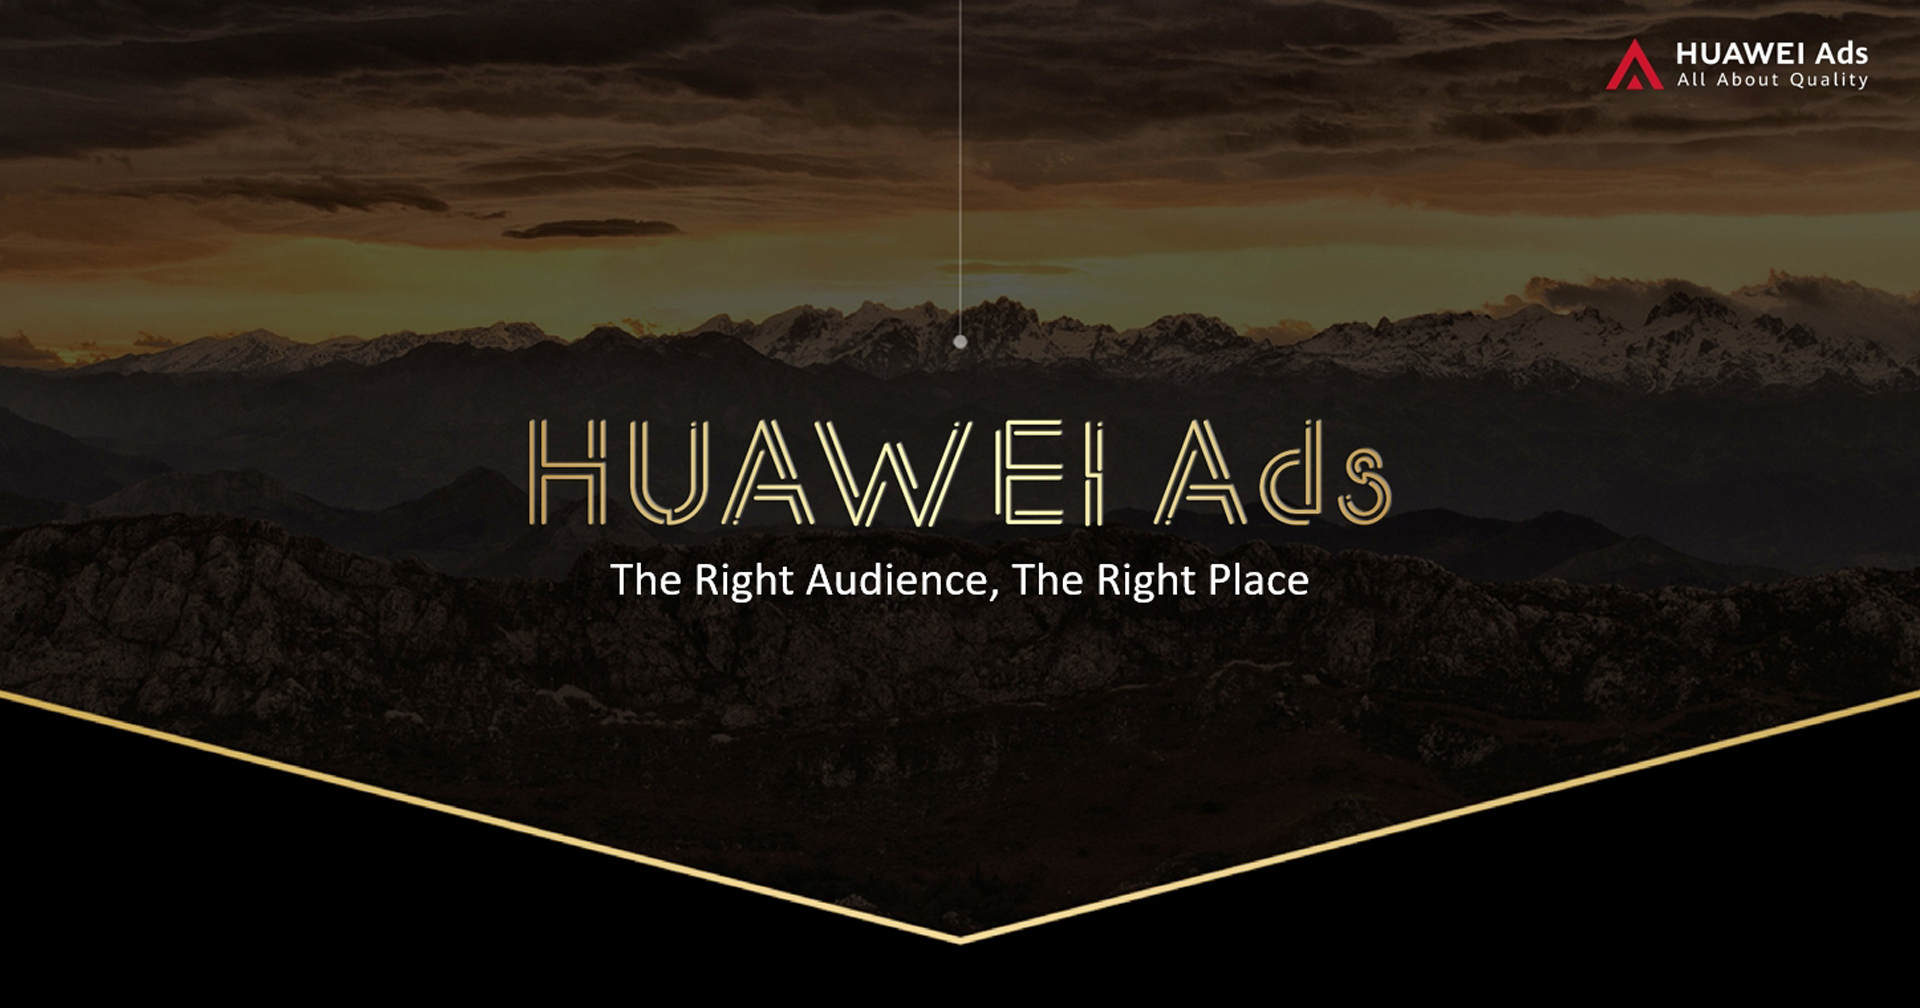 HUAWEI เดินหน้าขยายบริการส่งเสริมการทำธุรกิจทางดิจิทัล เผยบริการ  HUAWEI Ads  สู่ตลาดประเทศไทย